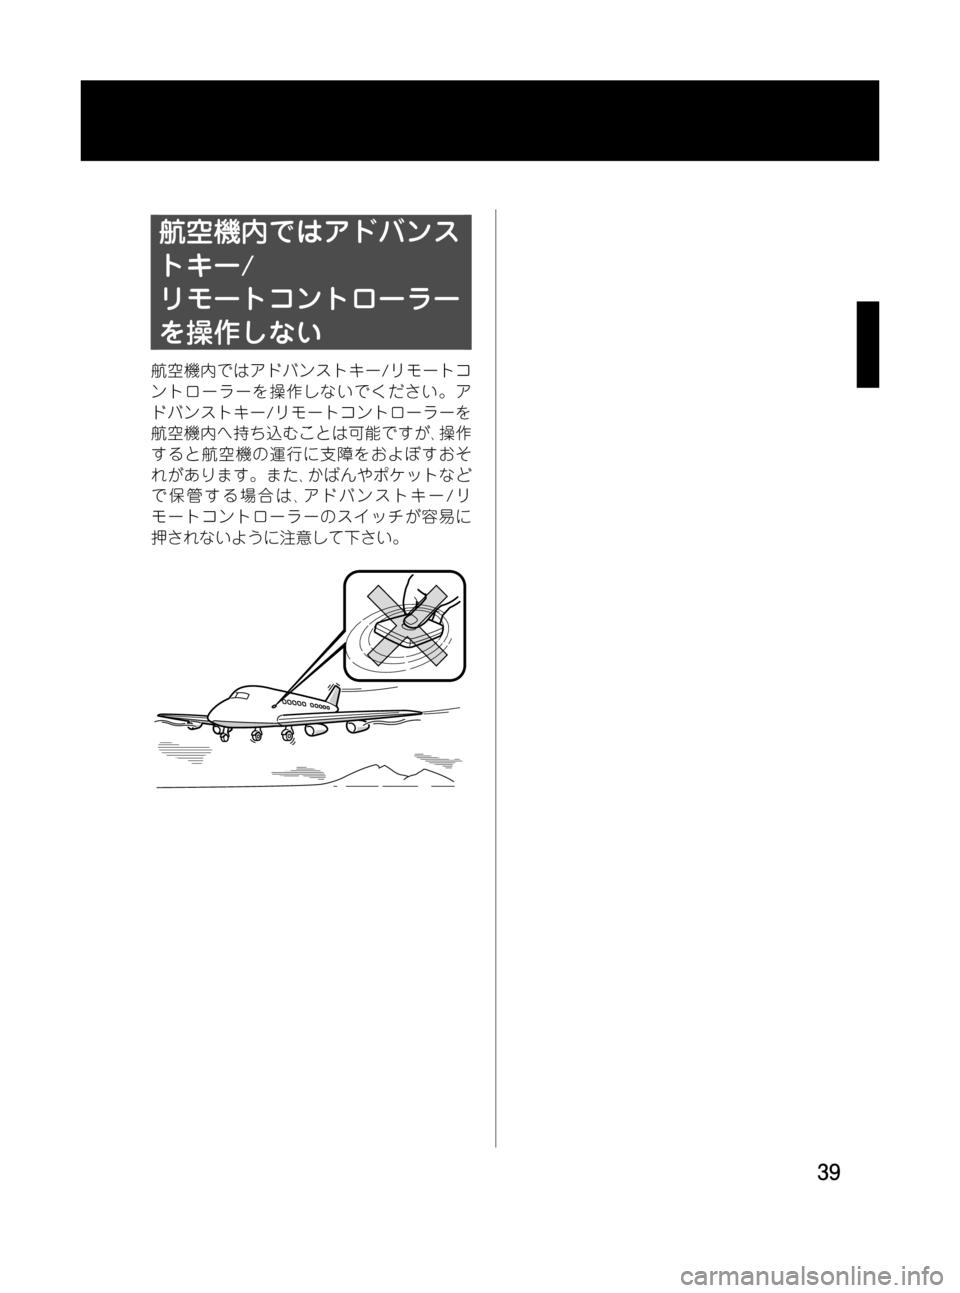 MAZDA MODEL RX 8 2008  取扱説明書 (in Japanese) Black plate (39,1)
航空機内ではアドバンス
トキー/
リモートコントローラー
を操作しない
航空機内ではアドバンストキー/リモートコ
ントローラーを操